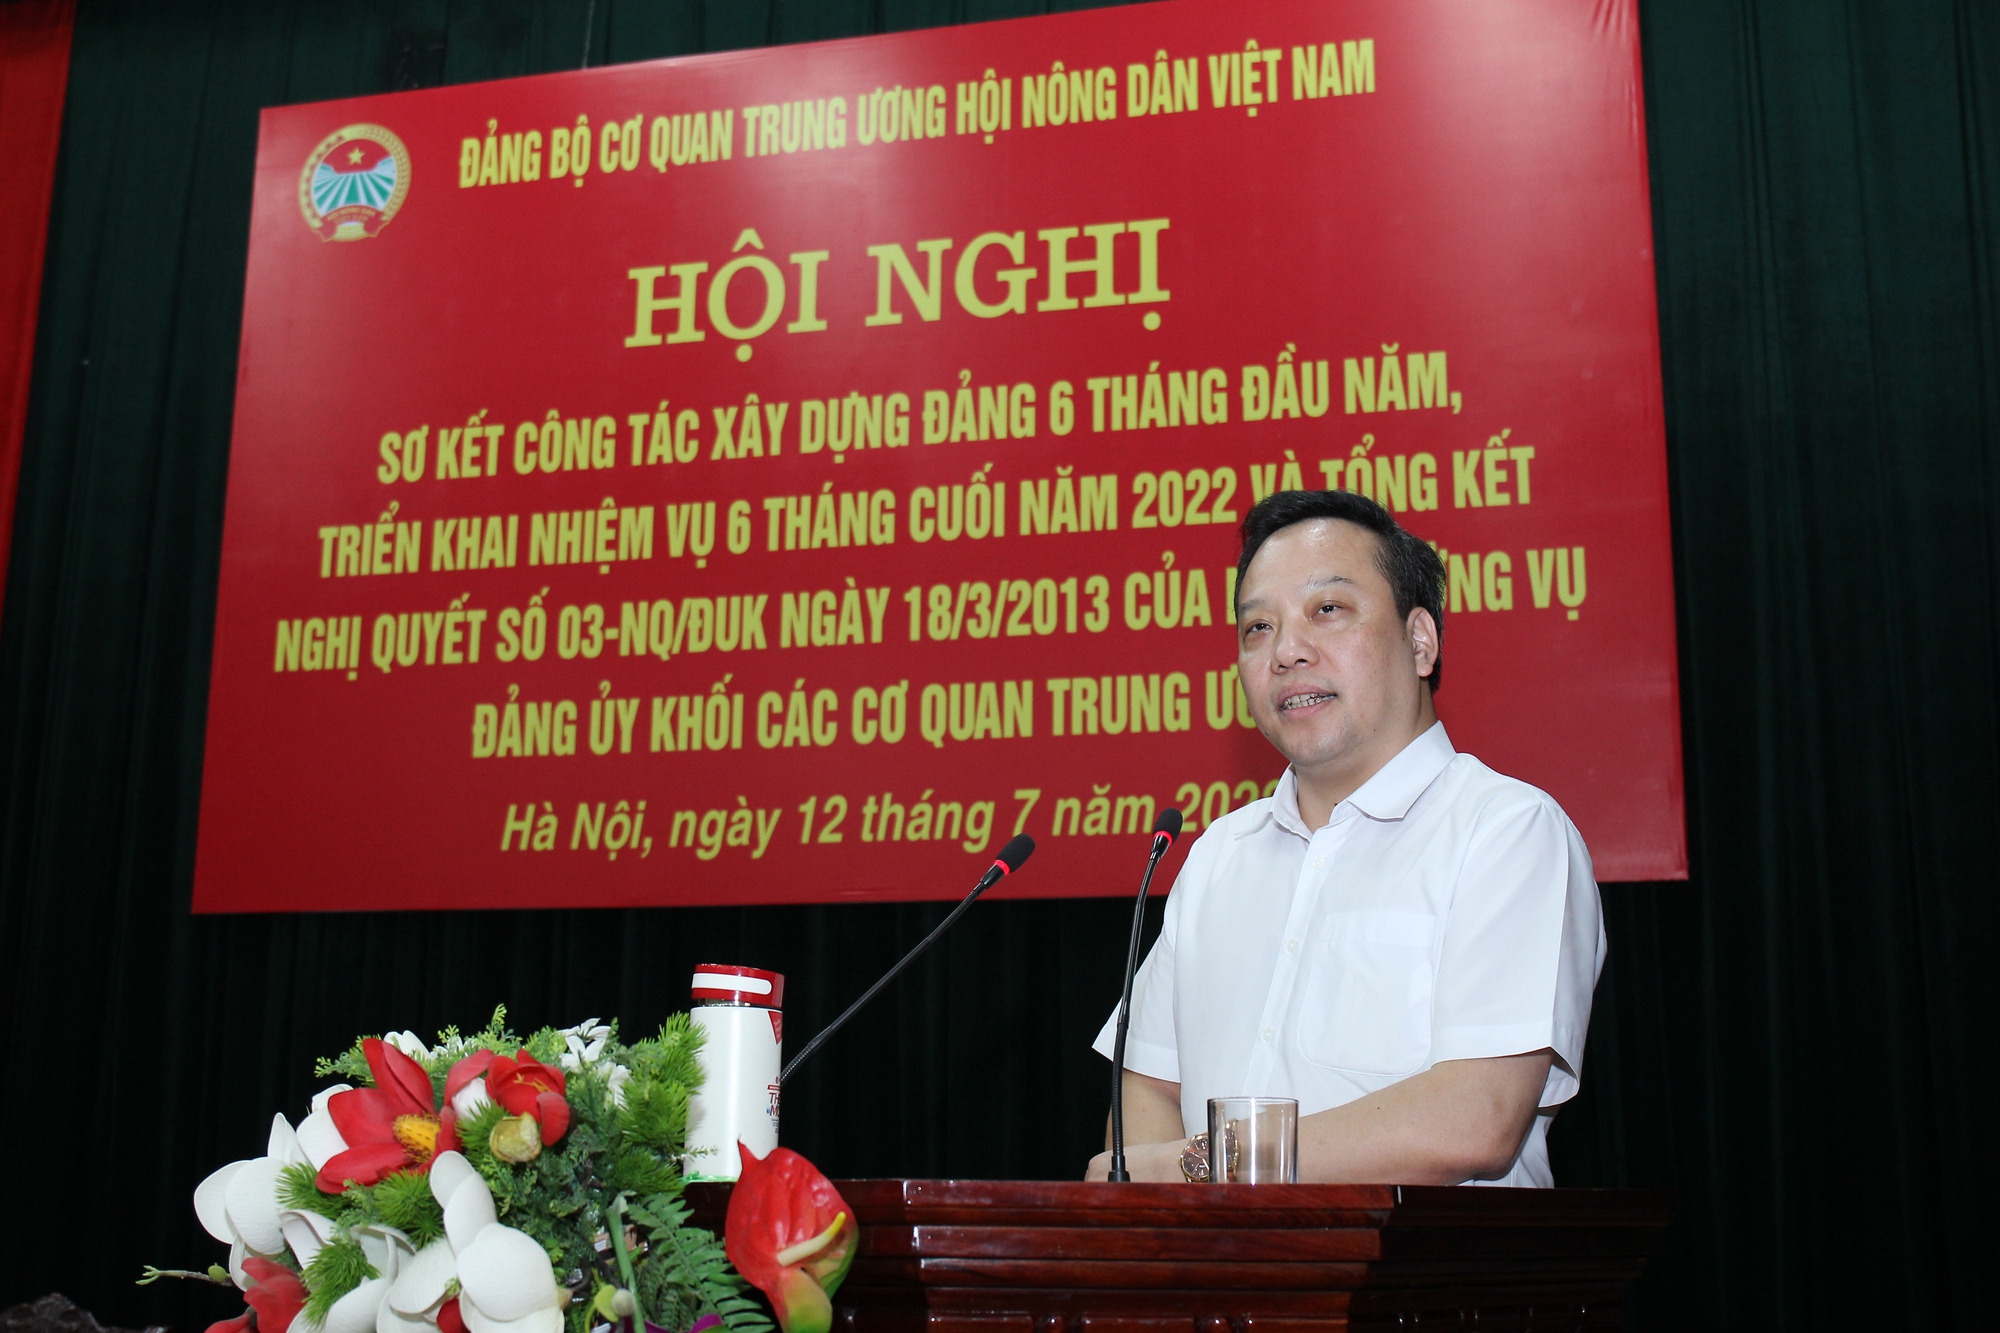 Đảng bộ cơ quan Trung ương Hội Nông dân Việt Nam sơ kết công tác Đảng 6 tháng đầu năm 2022 - Ảnh 3.